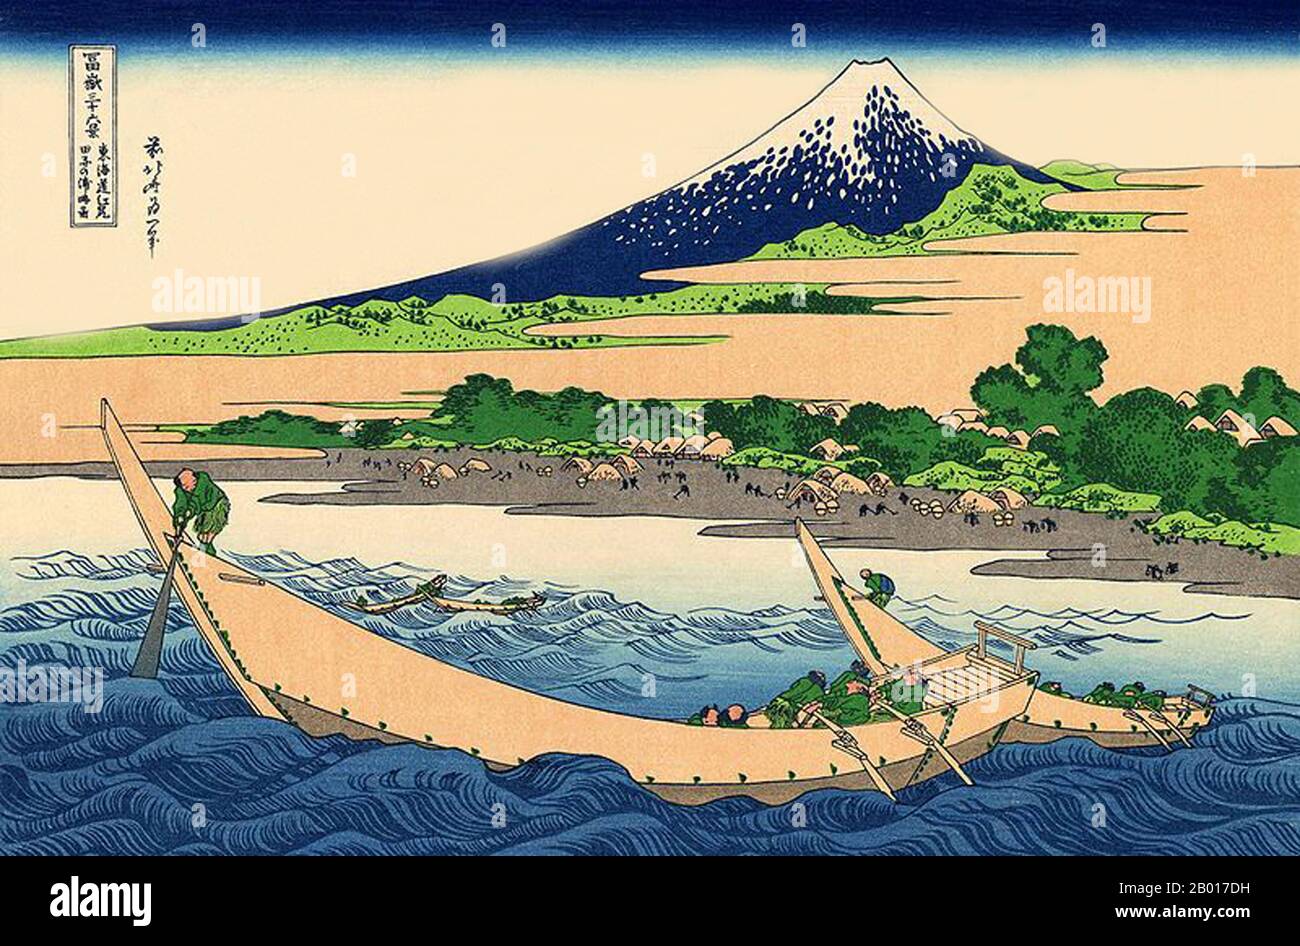 Japan: 'Tago Bay bei Ejiri am Tokaido'. Ukiyo-e Holzschnitt aus der Serie ‘Thirty-Six views of Mount Fuji’ von Katsushika Hokusai (31. Oktober 1760 - 10. Mai 1849), 1830. ‘Thirty-Six Views of Mount Fuji’ ist eine Serie von Holzschnitten der japanischen Künstlerin Katsushika Hokusai, die „Sukiyo-e“ ‘. Die Serie zeigt den Fuji in unterschiedlichen Jahreszeiten und Wetterbedingungen an verschiedenen Orten und Entfernungen. Es besteht tatsächlich aus 46 Drucken, die zwischen 1826 und 1833 entstanden sind. Die ersten 36 wurden in die ursprüngliche Publikation aufgenommen und aufgrund ihrer Popularität kamen 10 weitere hinzu. Stockfoto